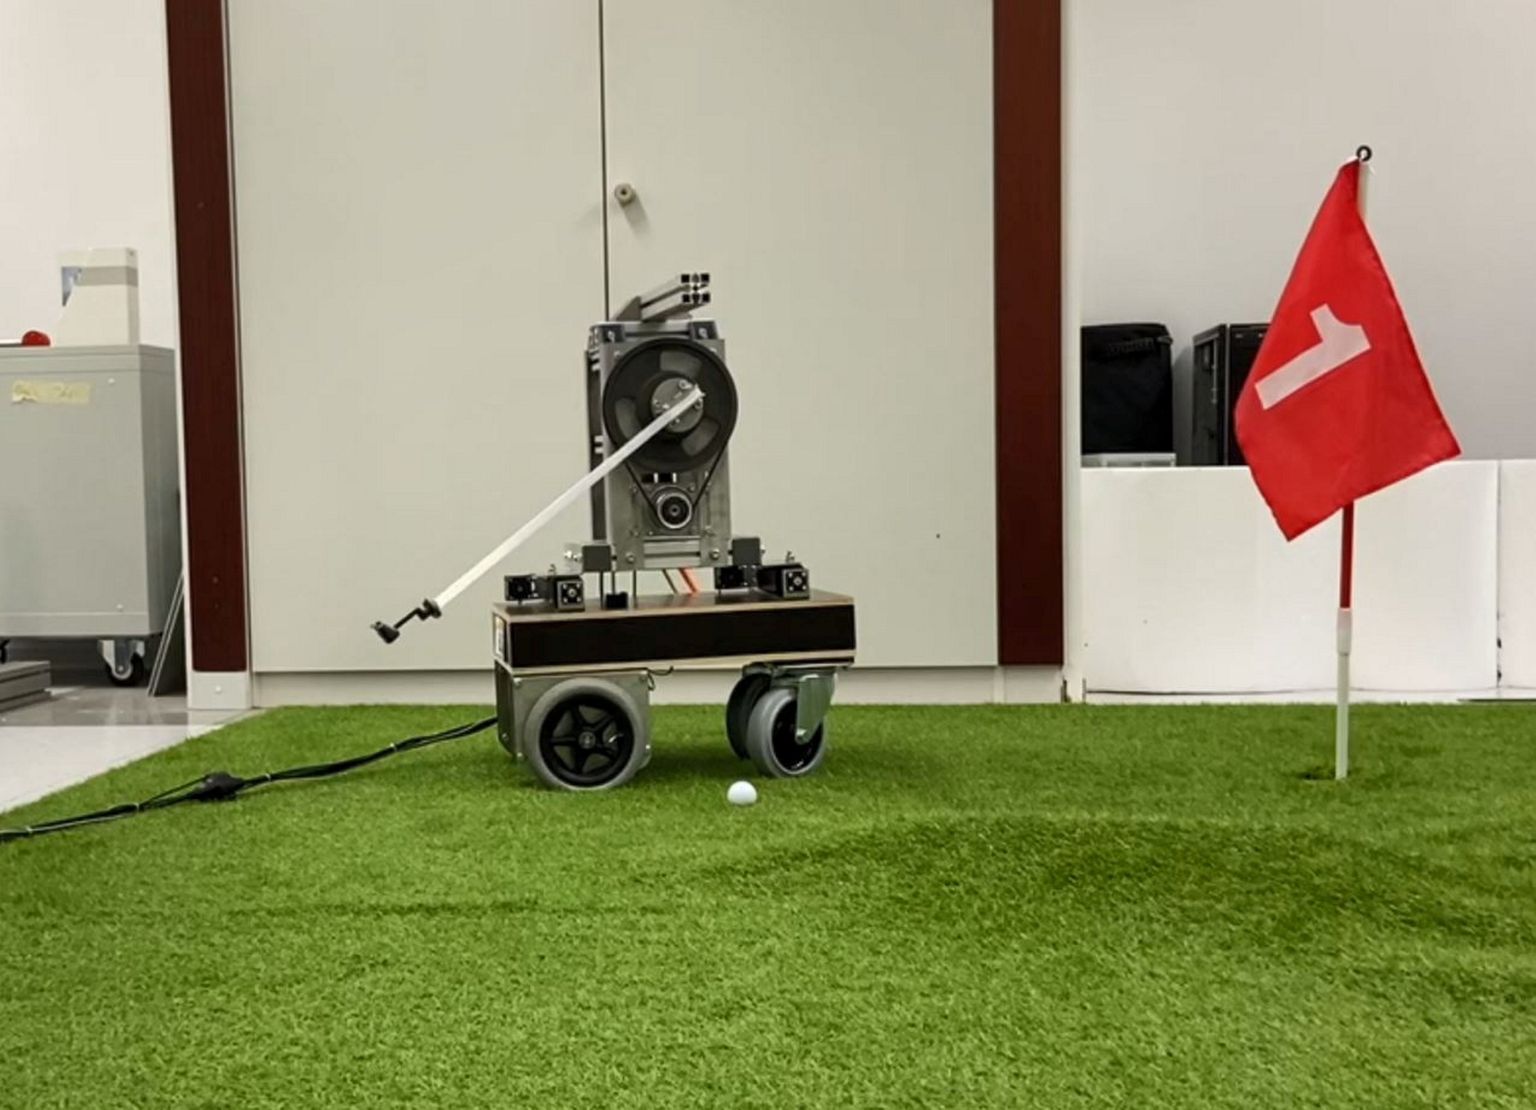 Paderborni ülikooli teadlaste ehitatud golfirobot Golfi kasutab palli täpseks auku saatmiseks füüsikaseadusi, mis aitavad täpse löögitrajektoori arvutada. Päris võistlustele robotit veel siiski saata ei saa, sest sel on saba taga, masin ehitati demonstreerimaks, kuidas masinõpe ja füüsikaseaduste arvestamine meid robotite juures aidata võivad.